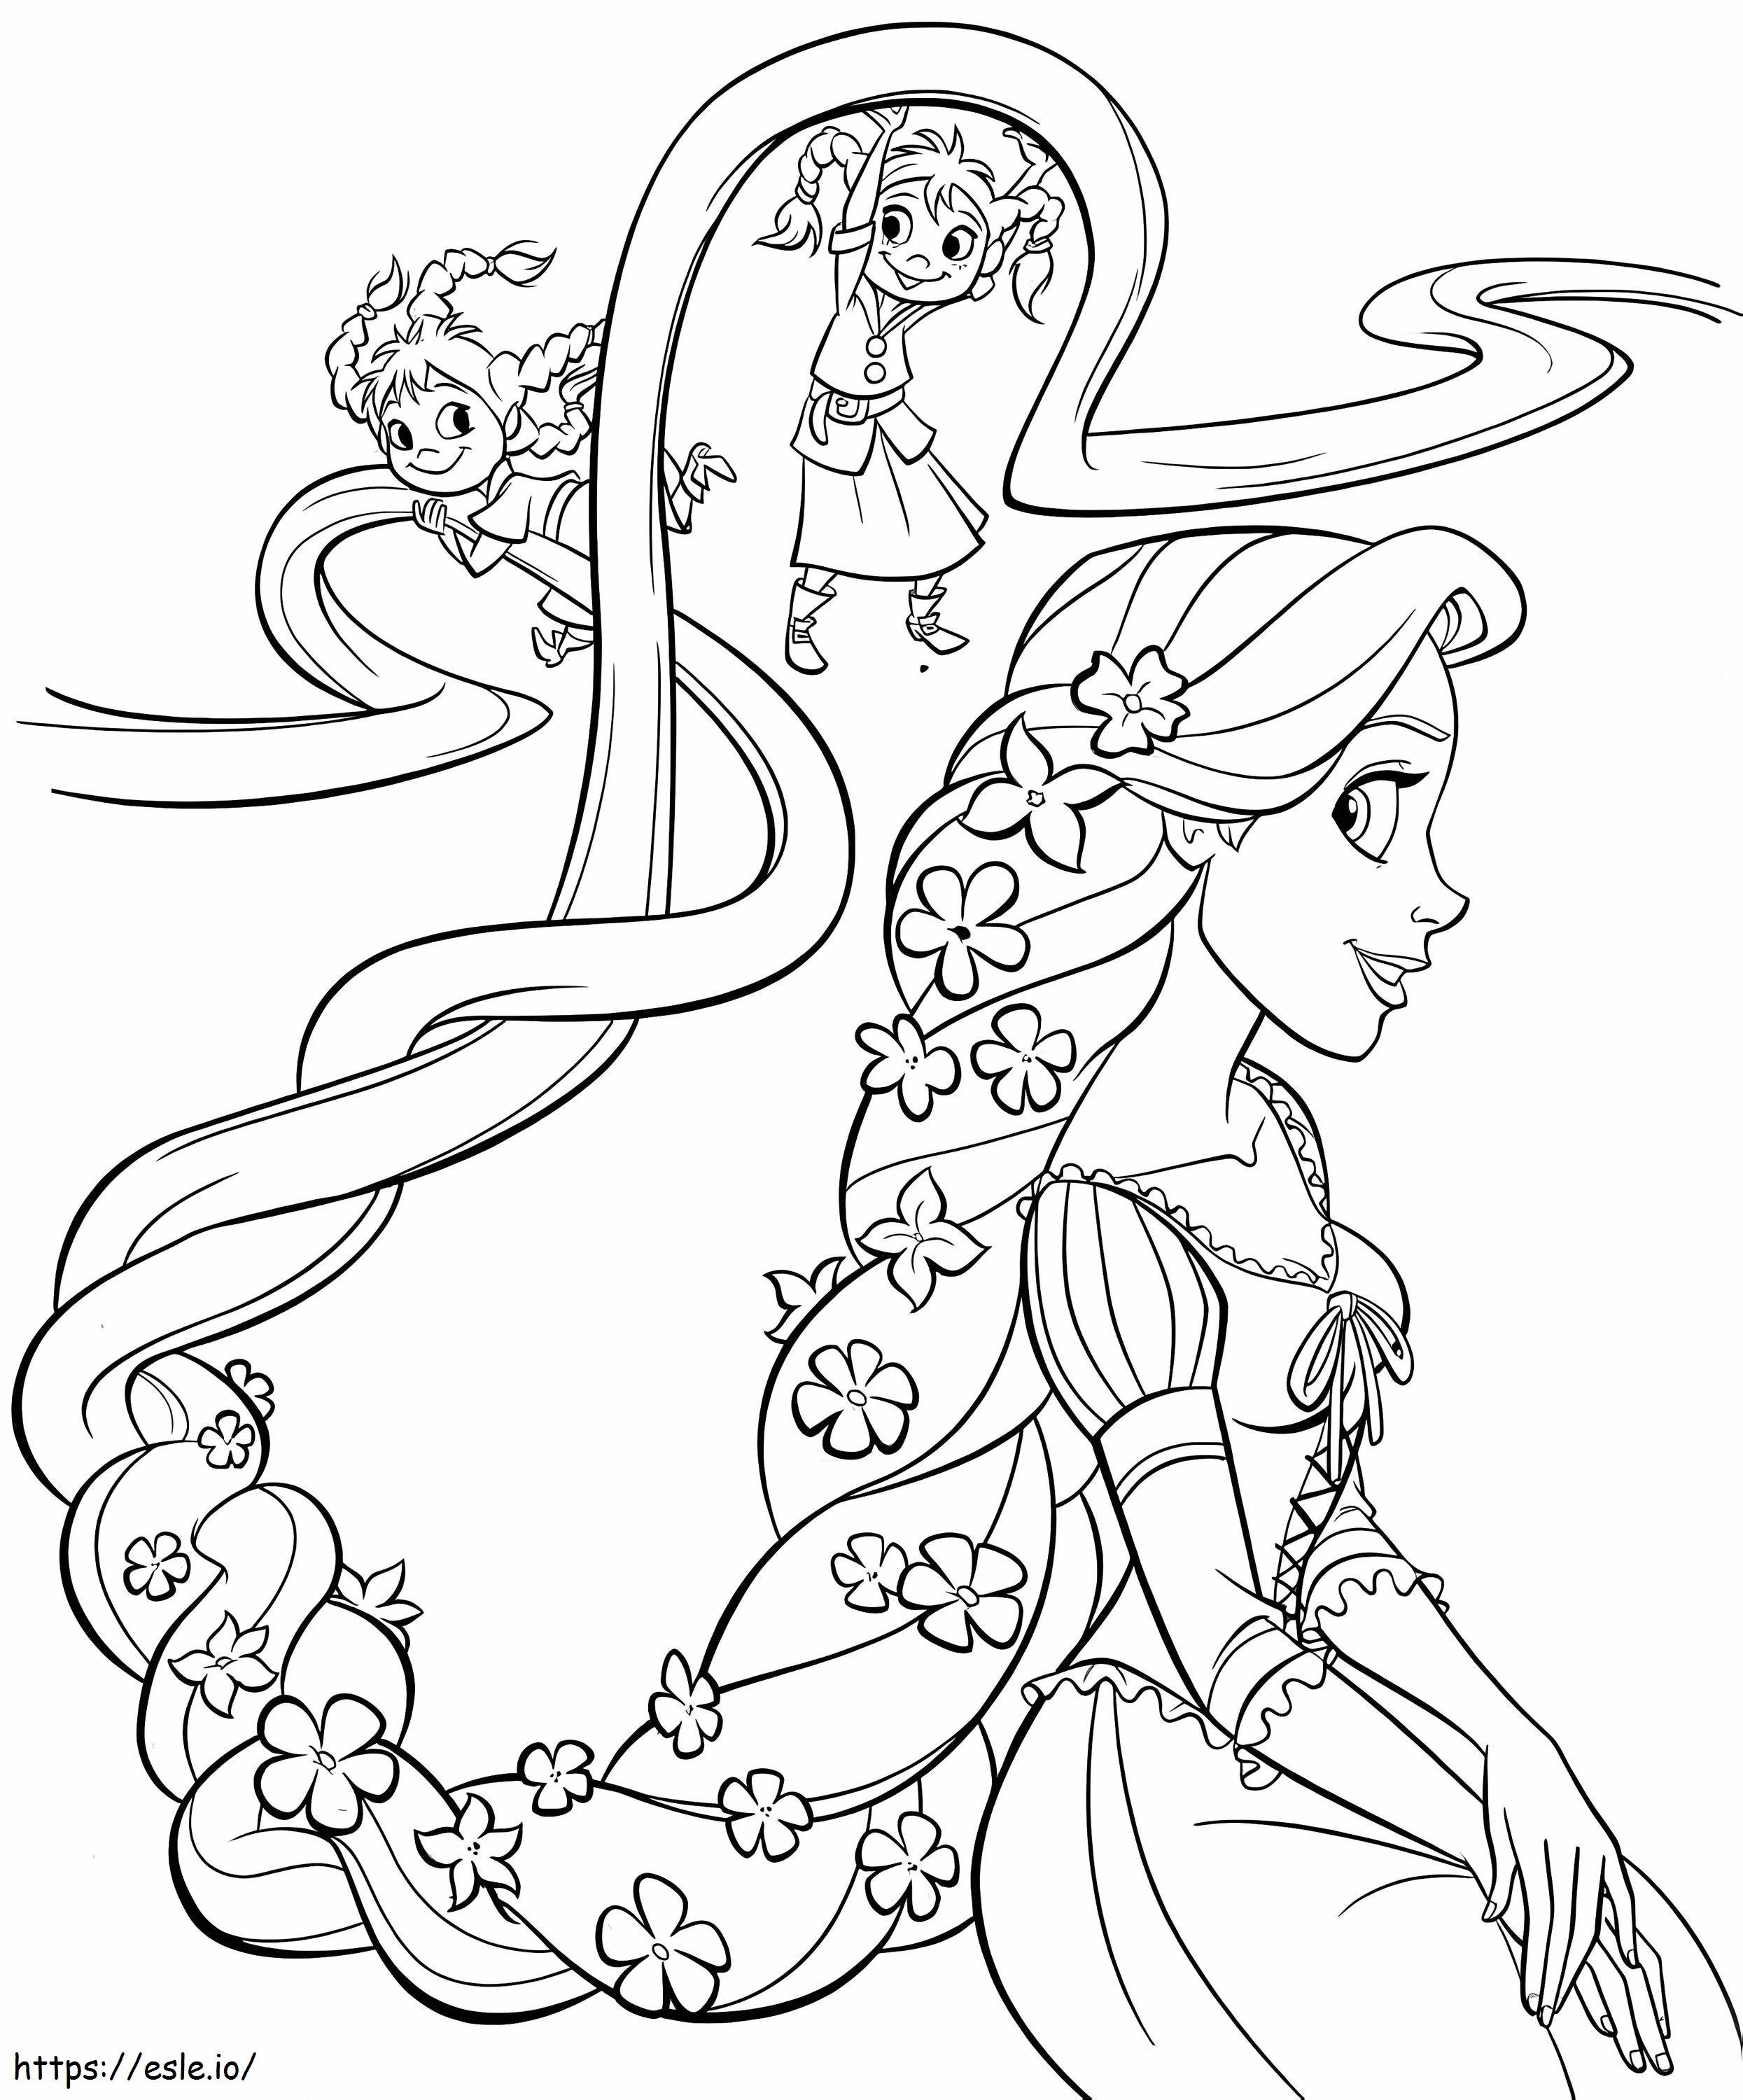 La principessa Rapunzel e i bambini da colorare